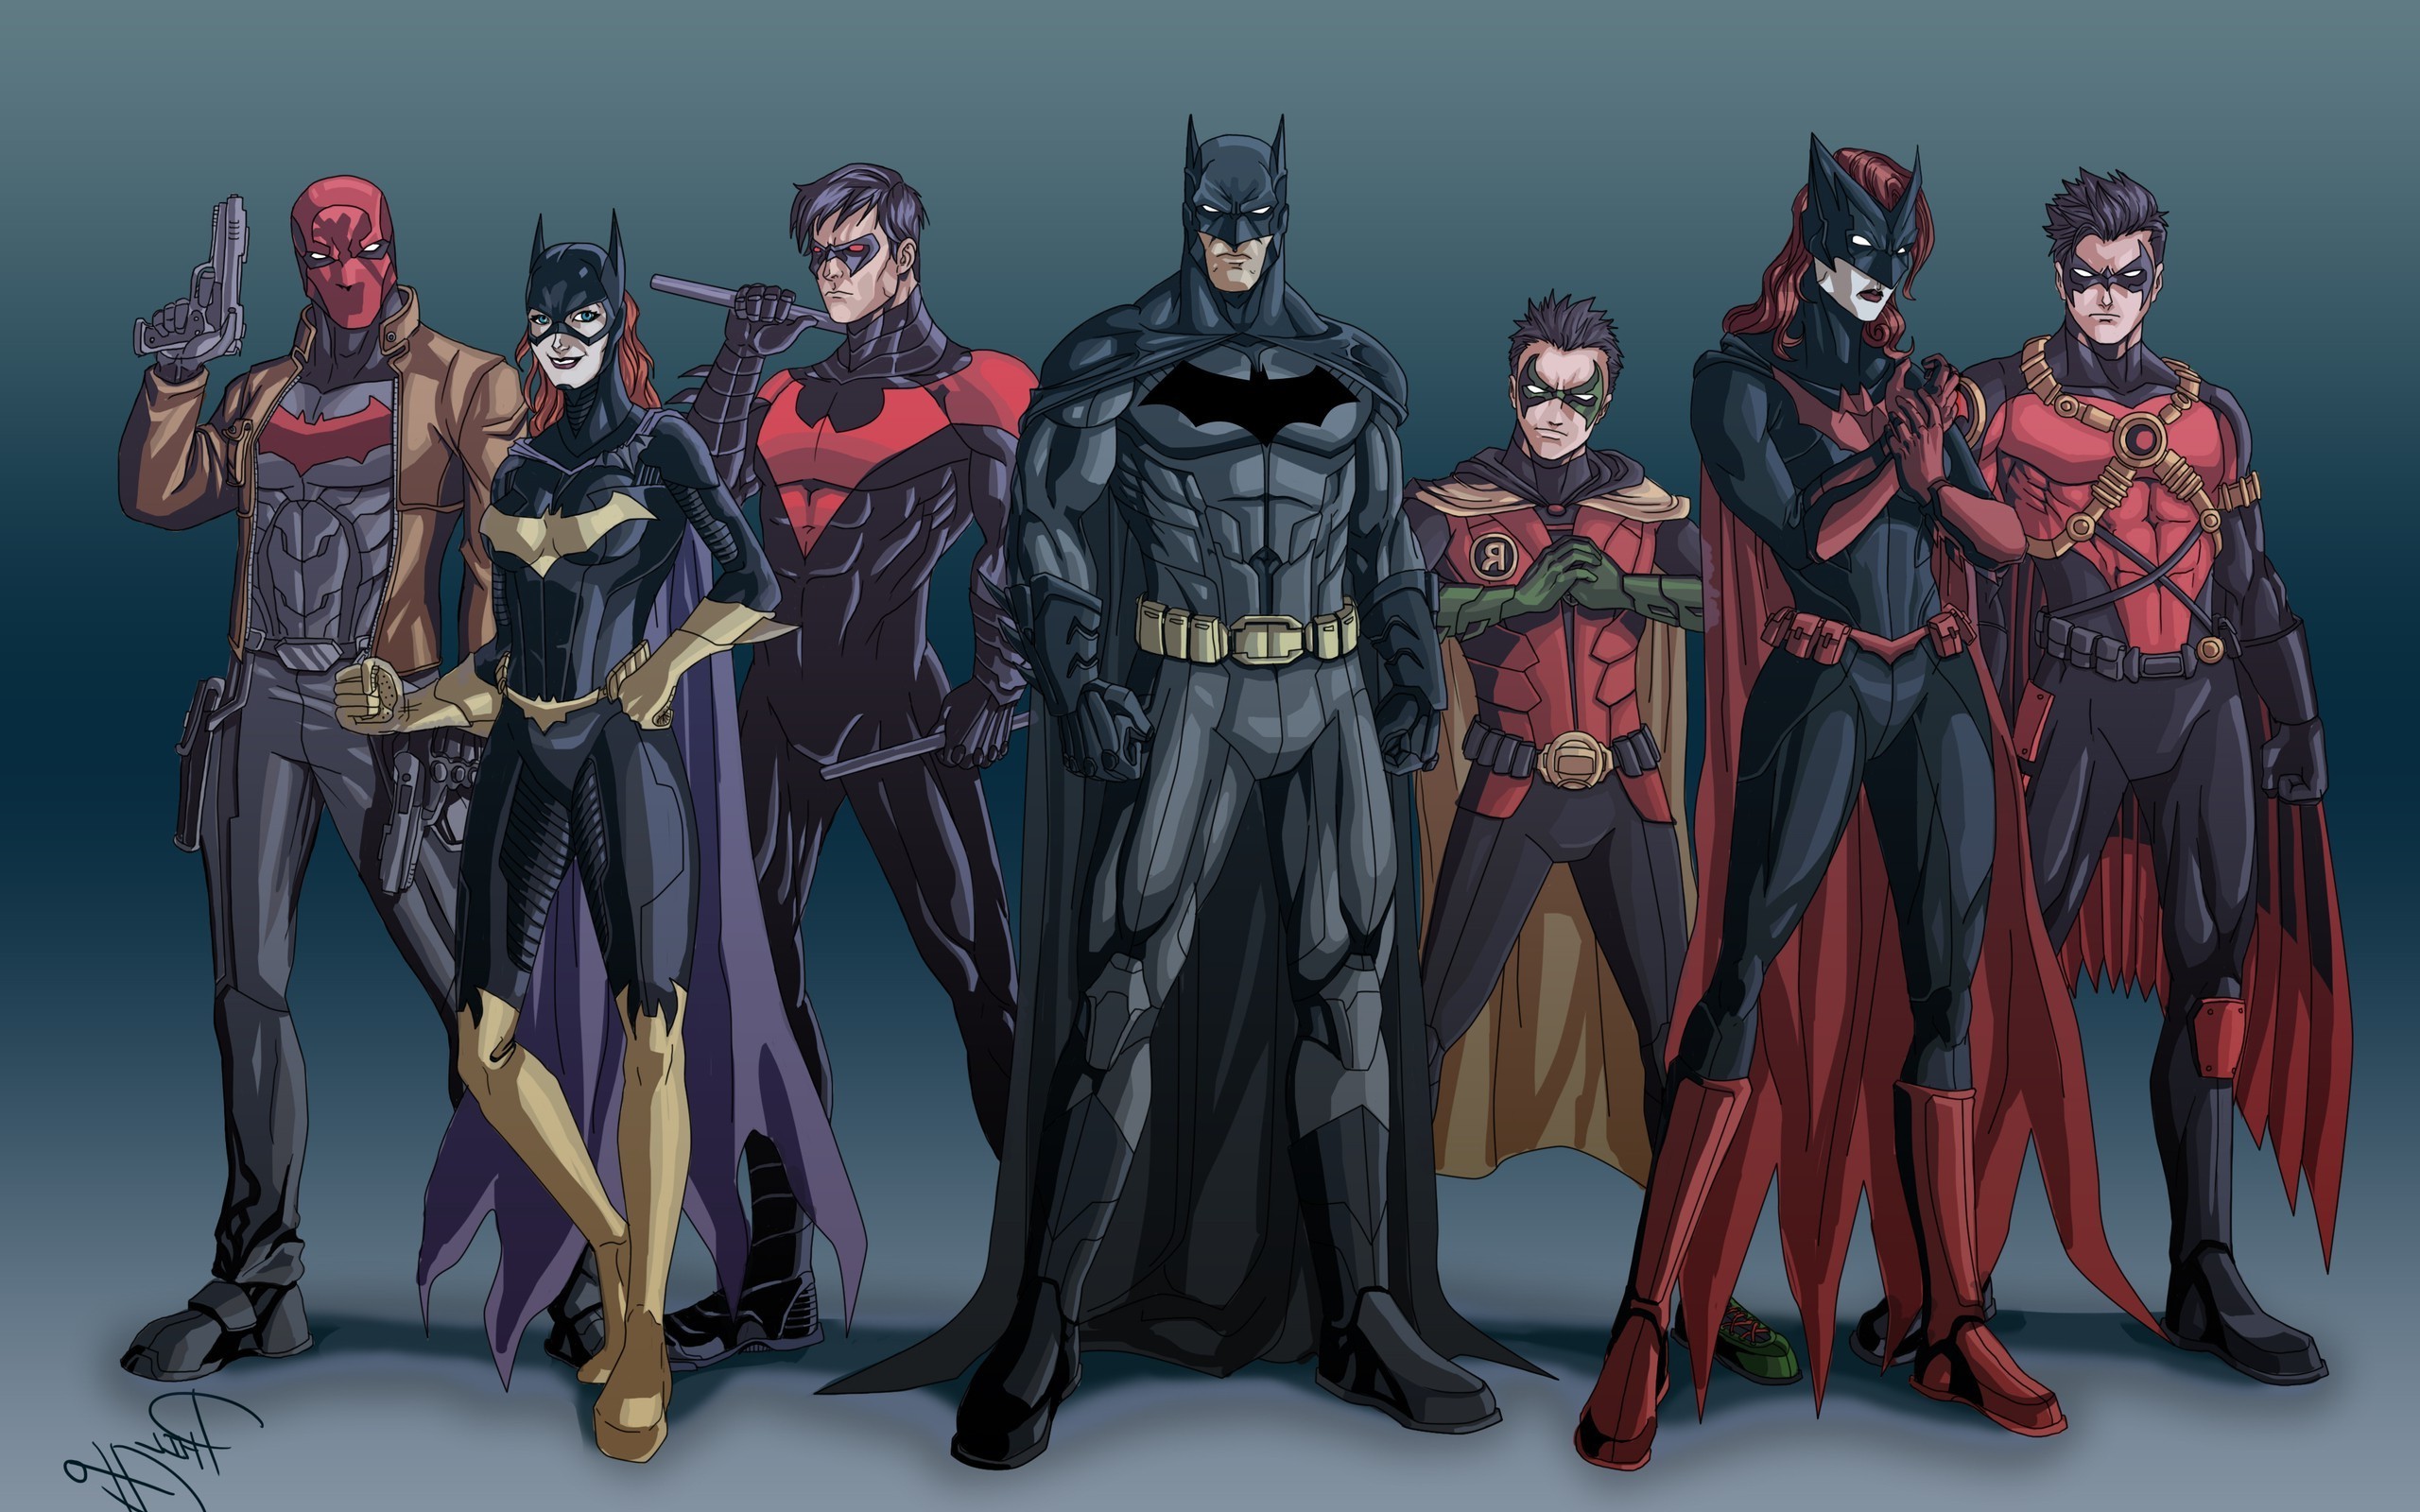 ロビンの壁紙,架空の人物,バットマン,スーパーヒーロー,正義リーグ,コスチューム